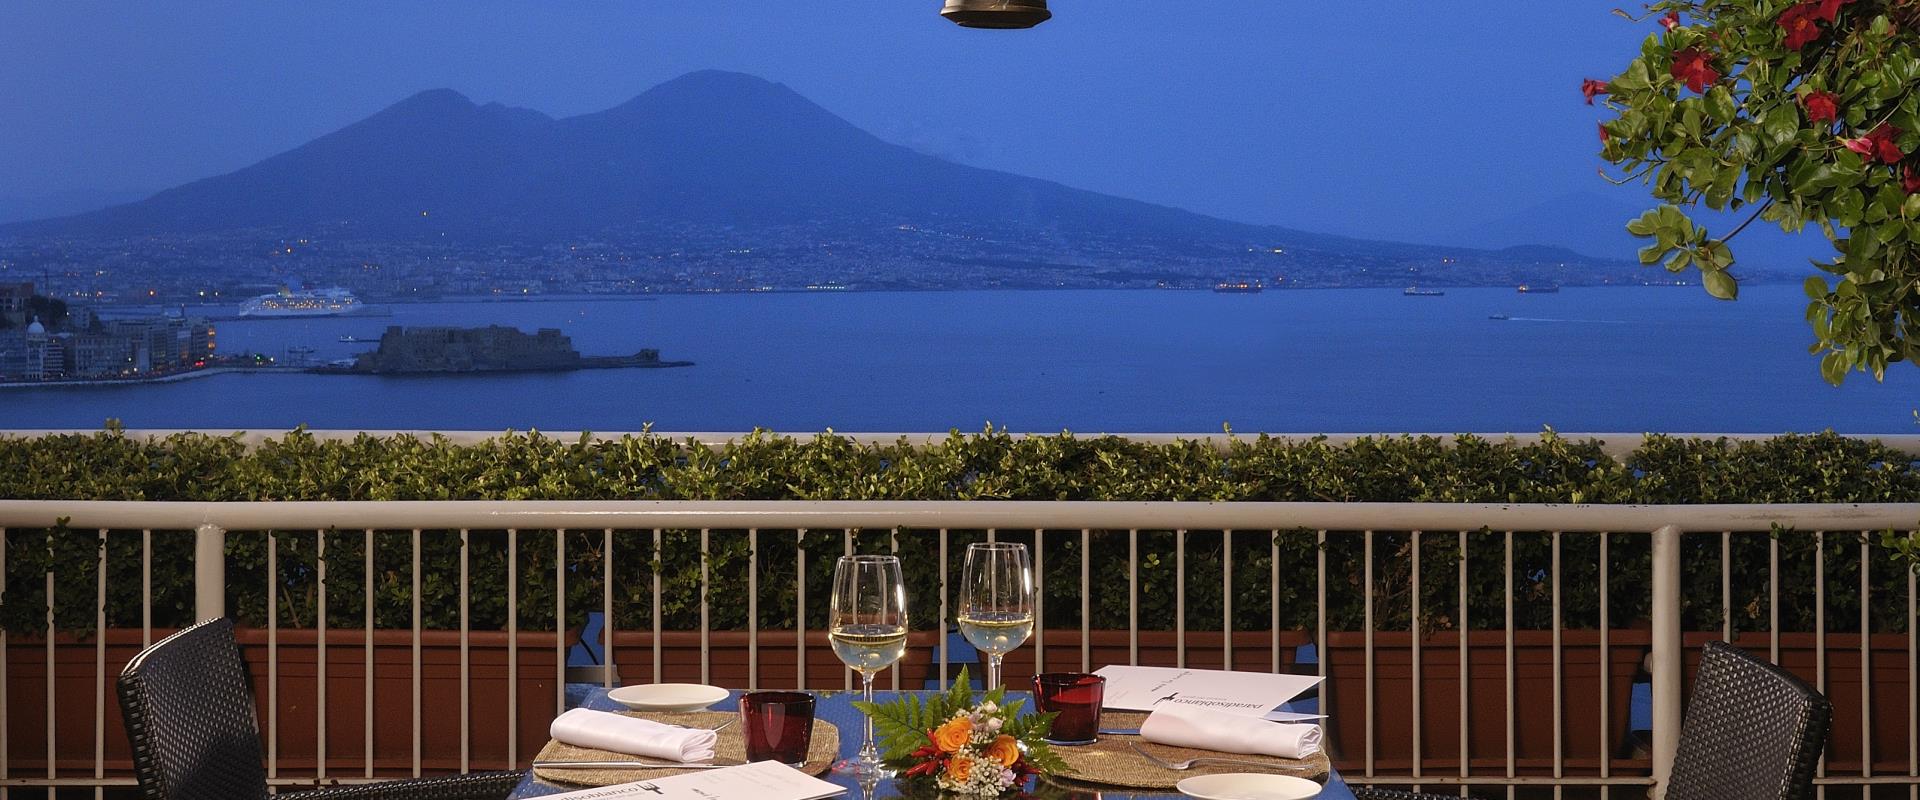 Dîner romantique dans le golfe de Naples